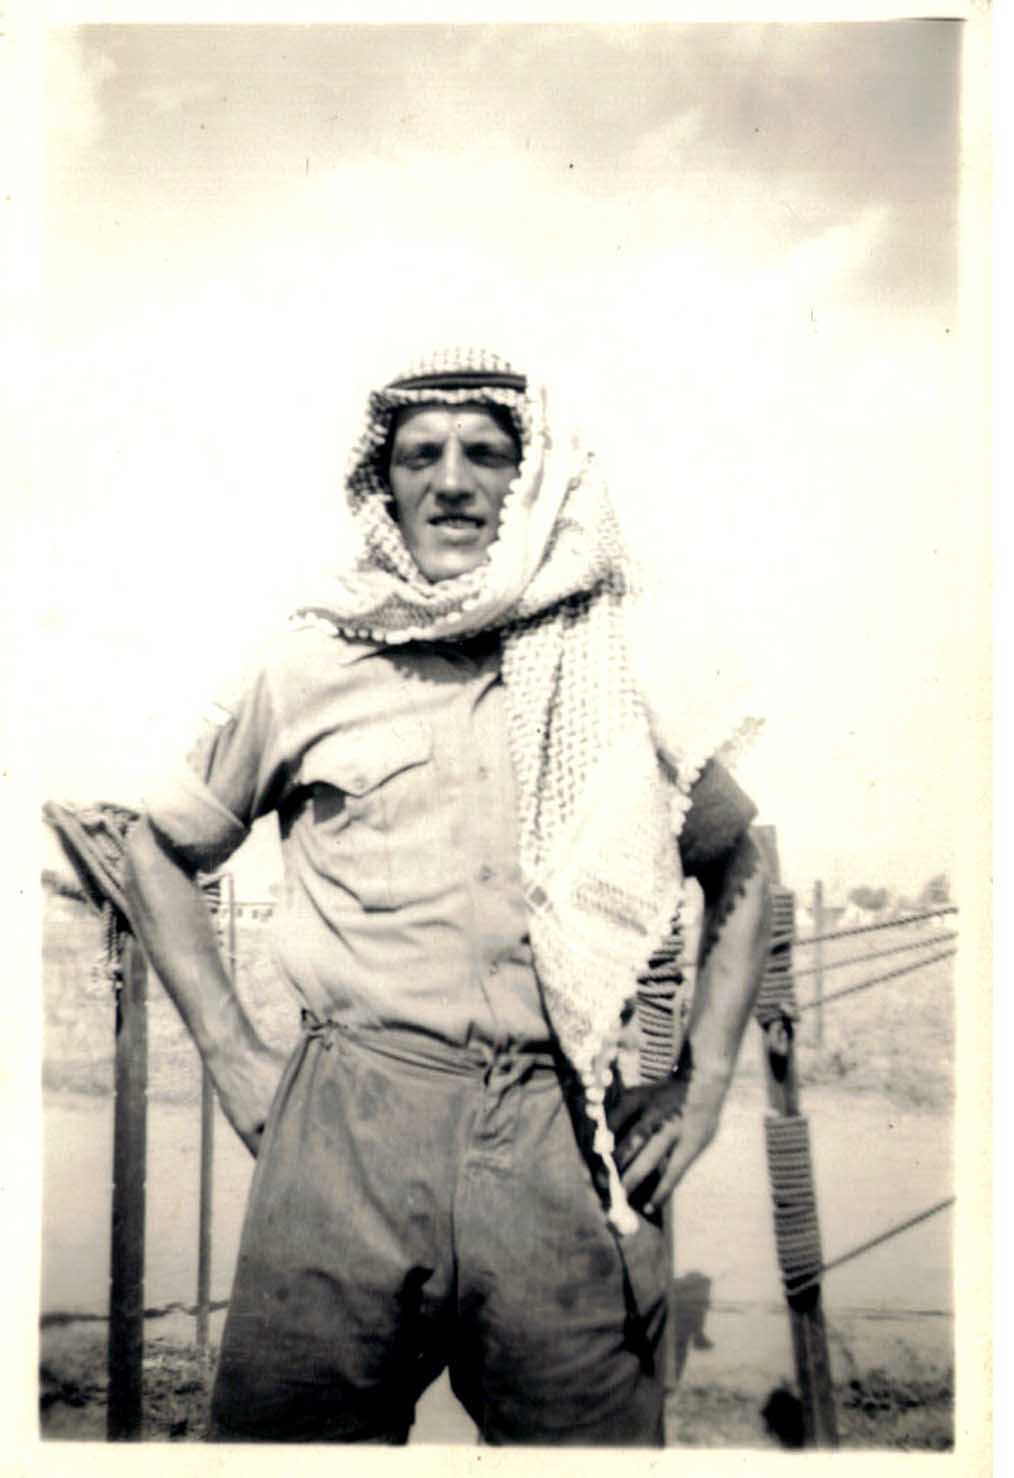 Suez 56 - Corporal Lowe wearing local head gear